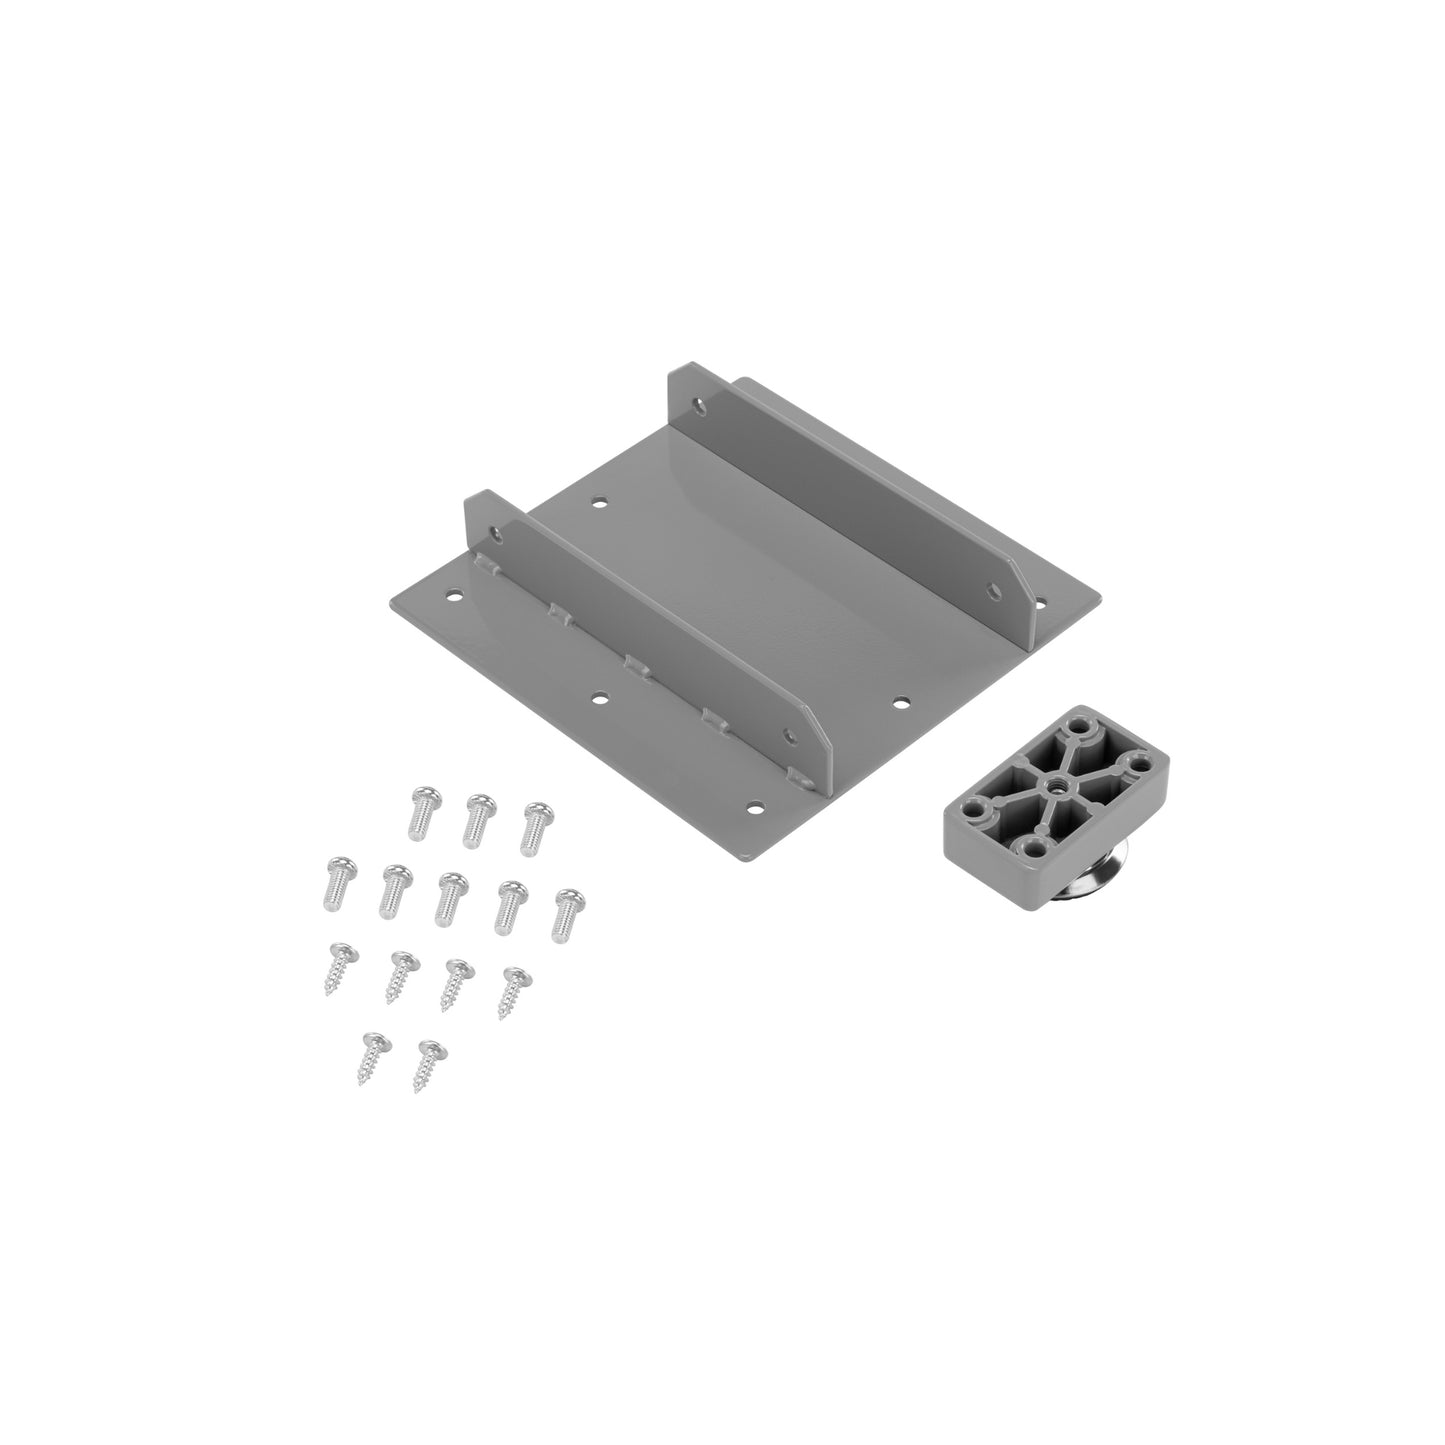 Bracket Kit for LG-02 Gray 3